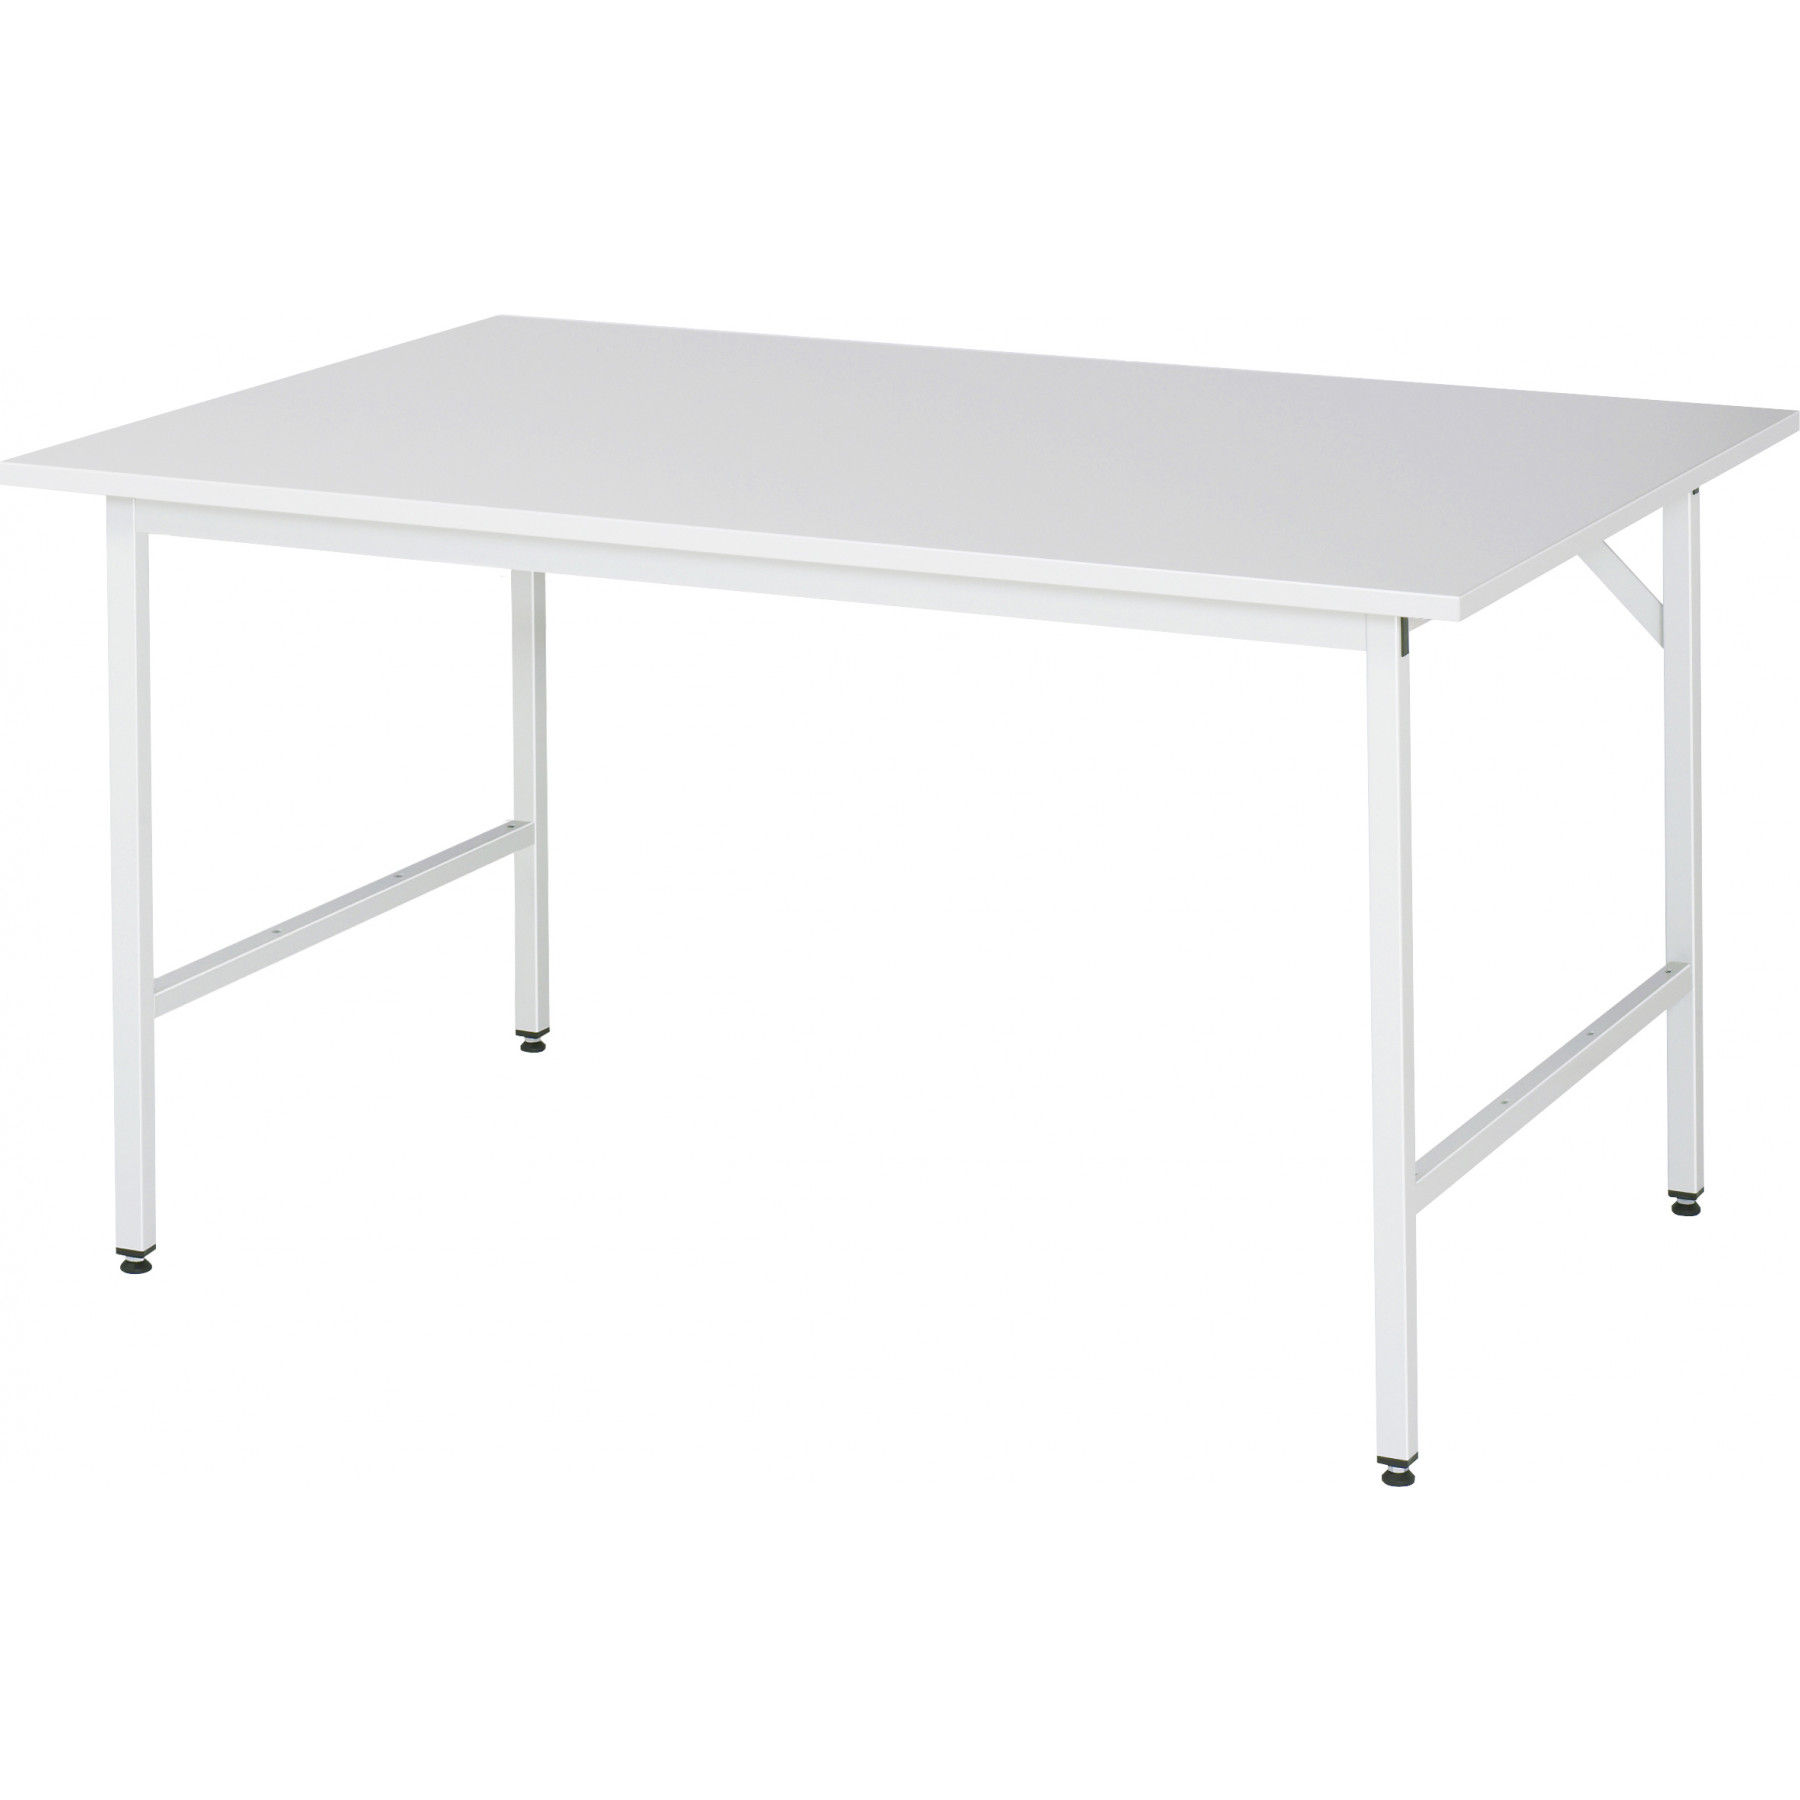 Werktafel met werkblad met EGB-melaminehars coating, serie Jerry 1000 mm